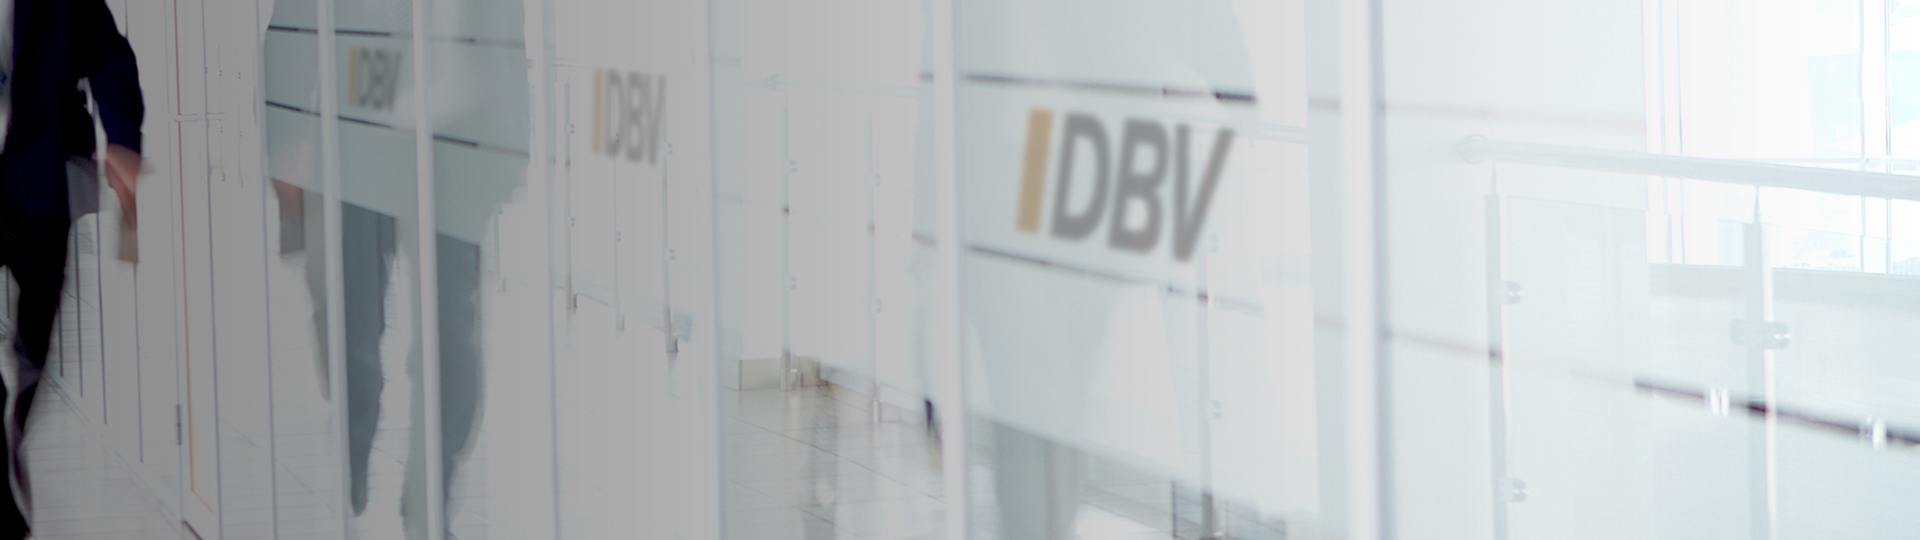 Dienstunfähigkeitsversicherung | DBV Hornig & Knoch oHG in] Hannover 